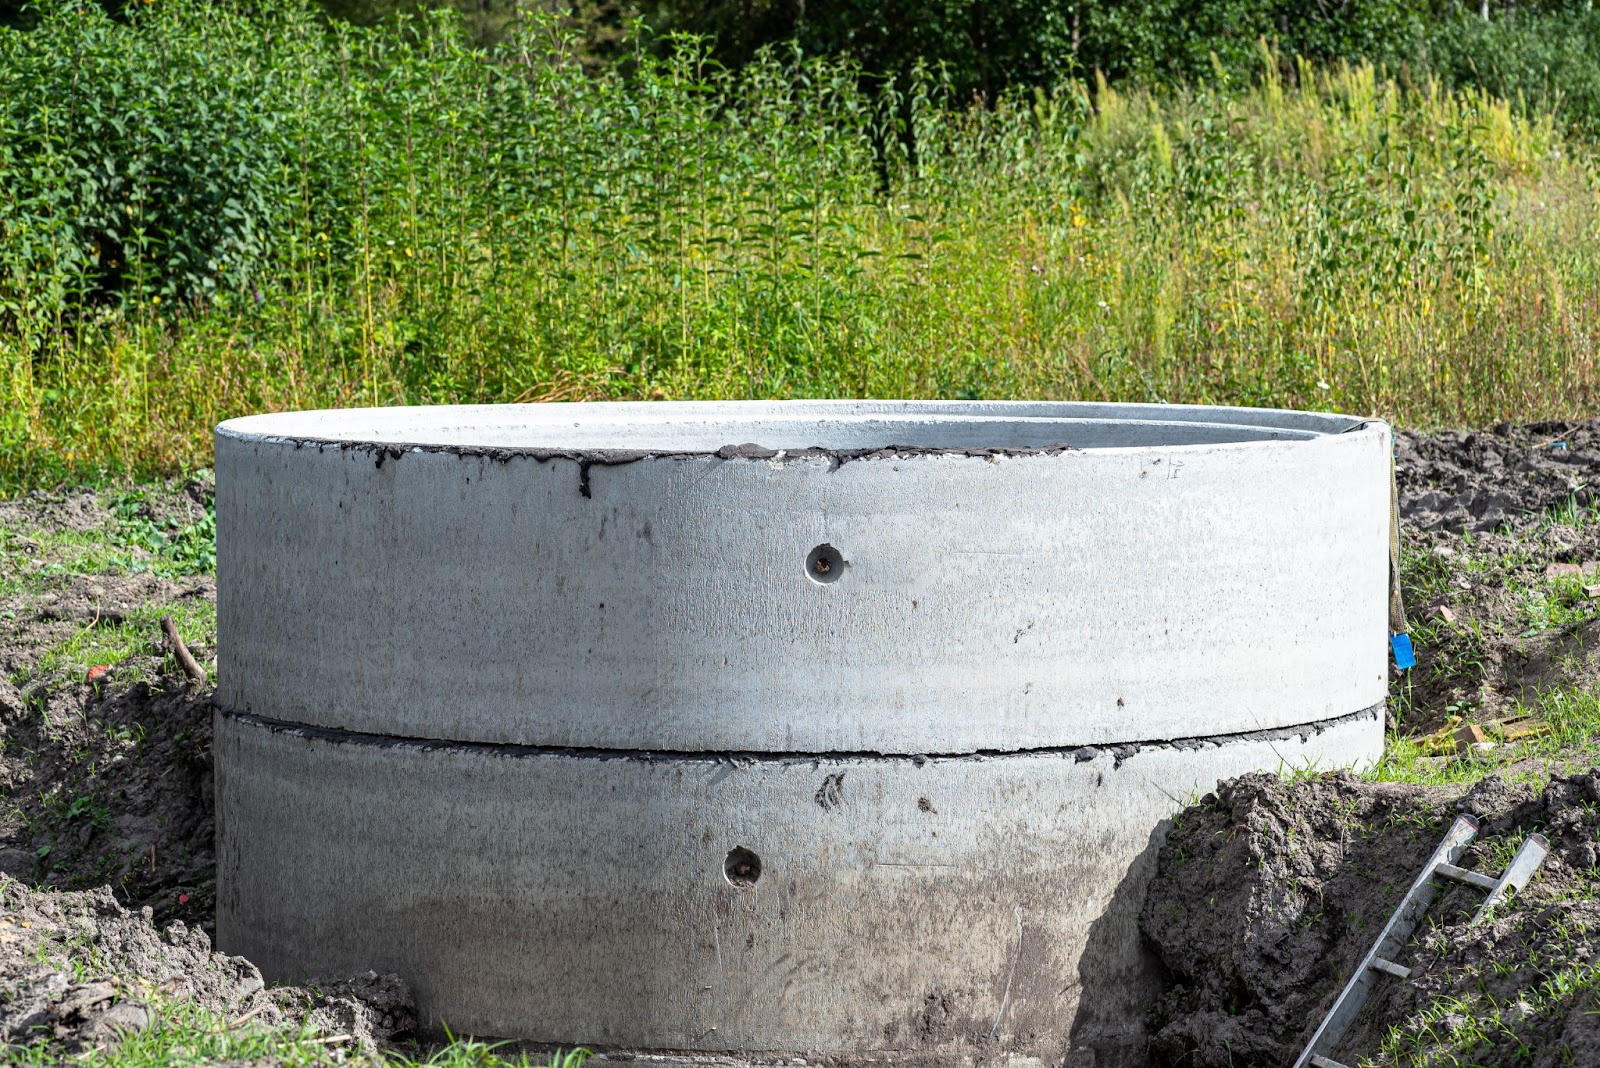 zbiornik betonowy do gromadzenia wody deszczowej